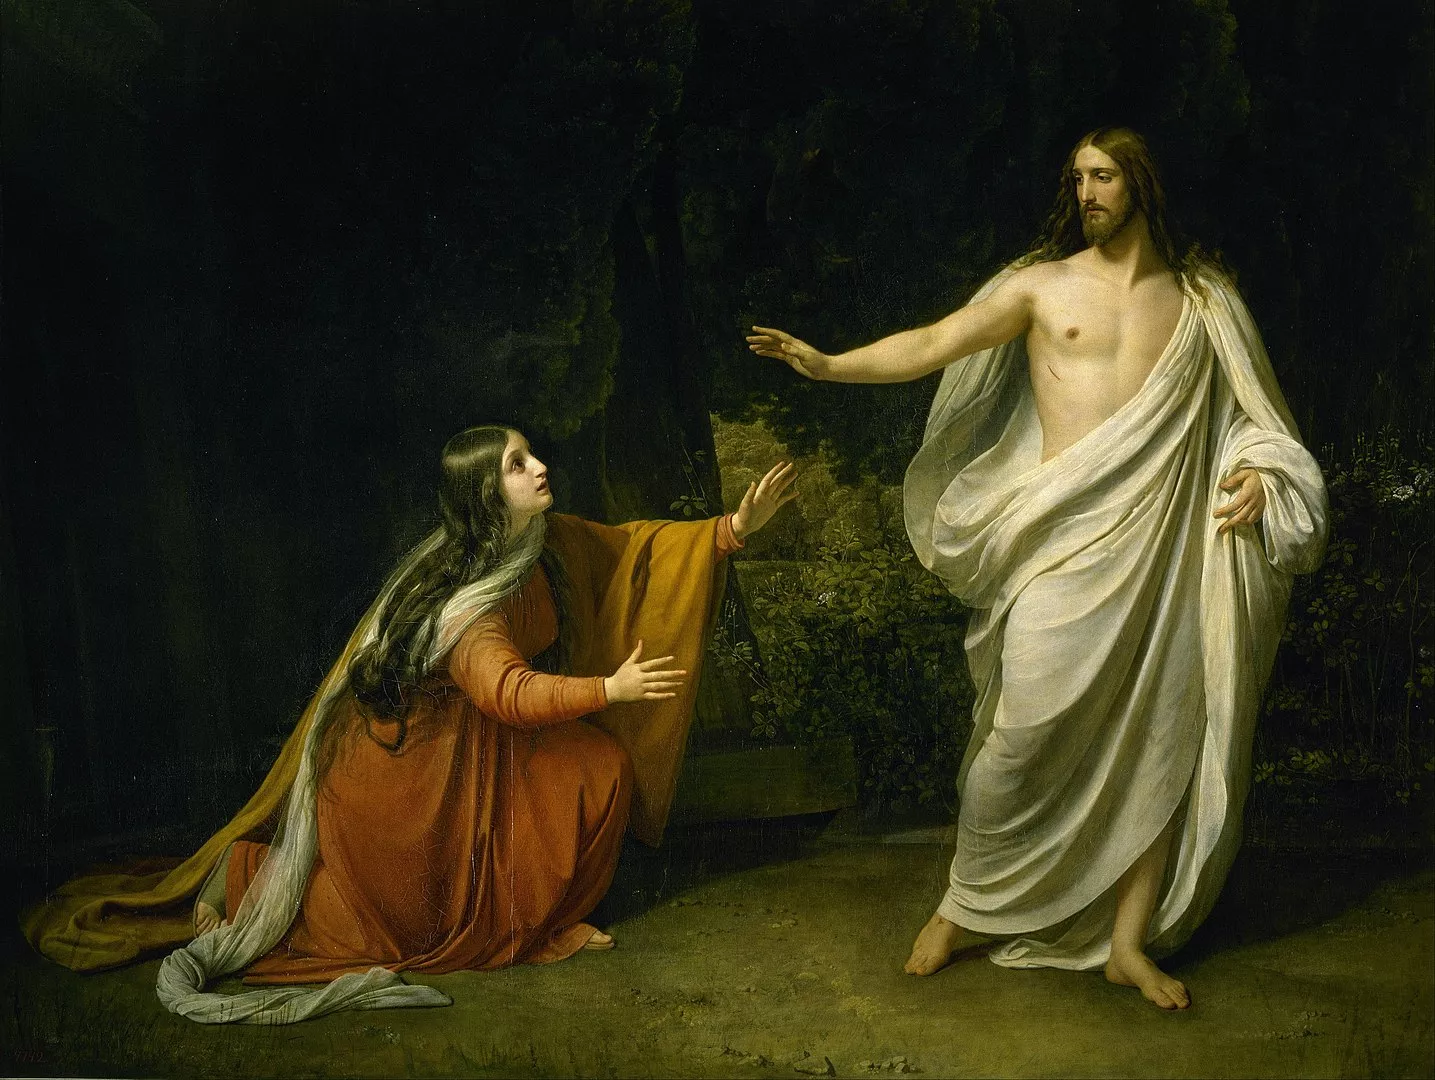 Segons l'evangelista Joan, Maria Magdalena va ser el primer testimoni del Jesús ressuscitat i va córrer a comunicar-ho als apòstols. Aquesta pintura d'Alexander Andreievitsch